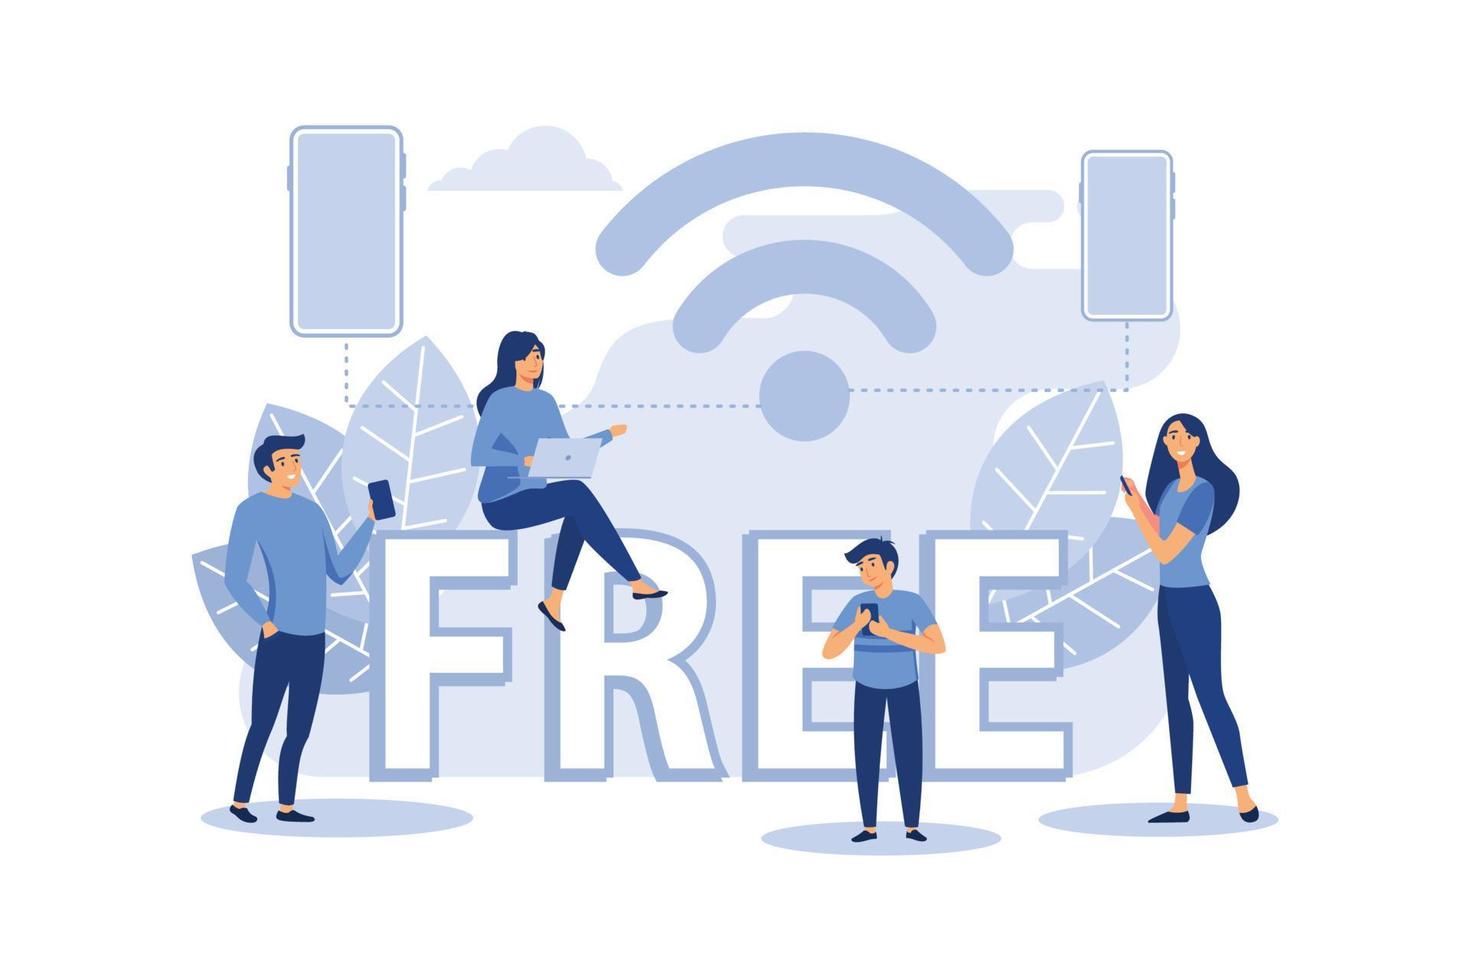 connessione wireless pubblica gratuita punto wireless wi-fi, per interfaccia utente mobile, trasmissione di flussi di dati digitali su canali radio illustrazione vettoriale piatta